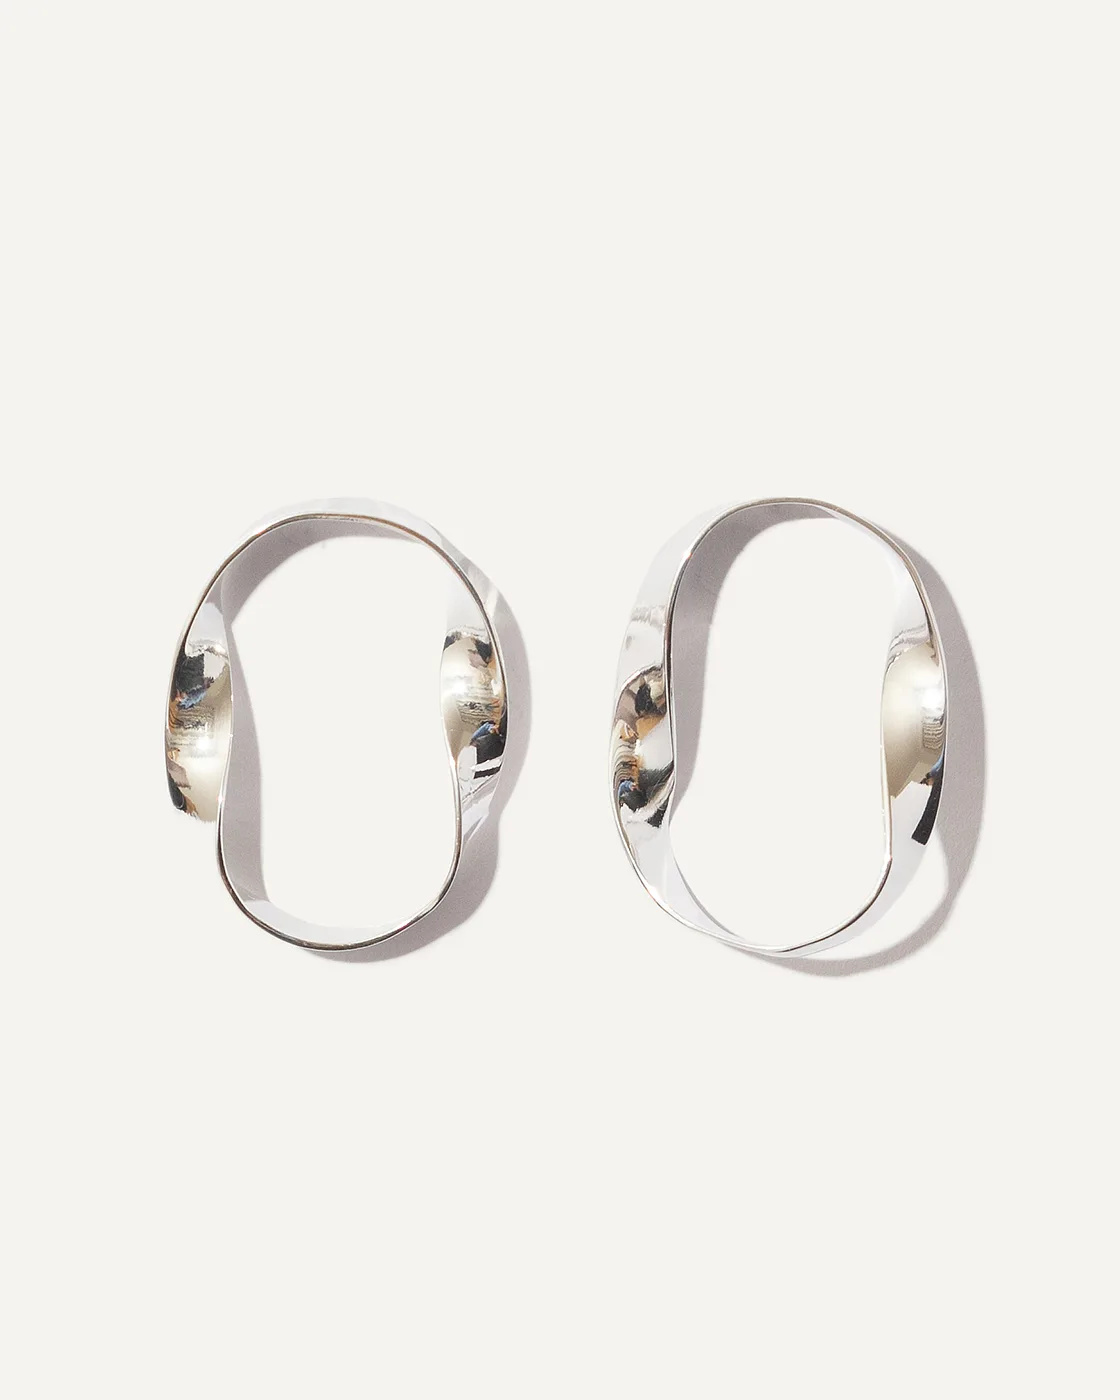 Sterling Silver Link Earrings